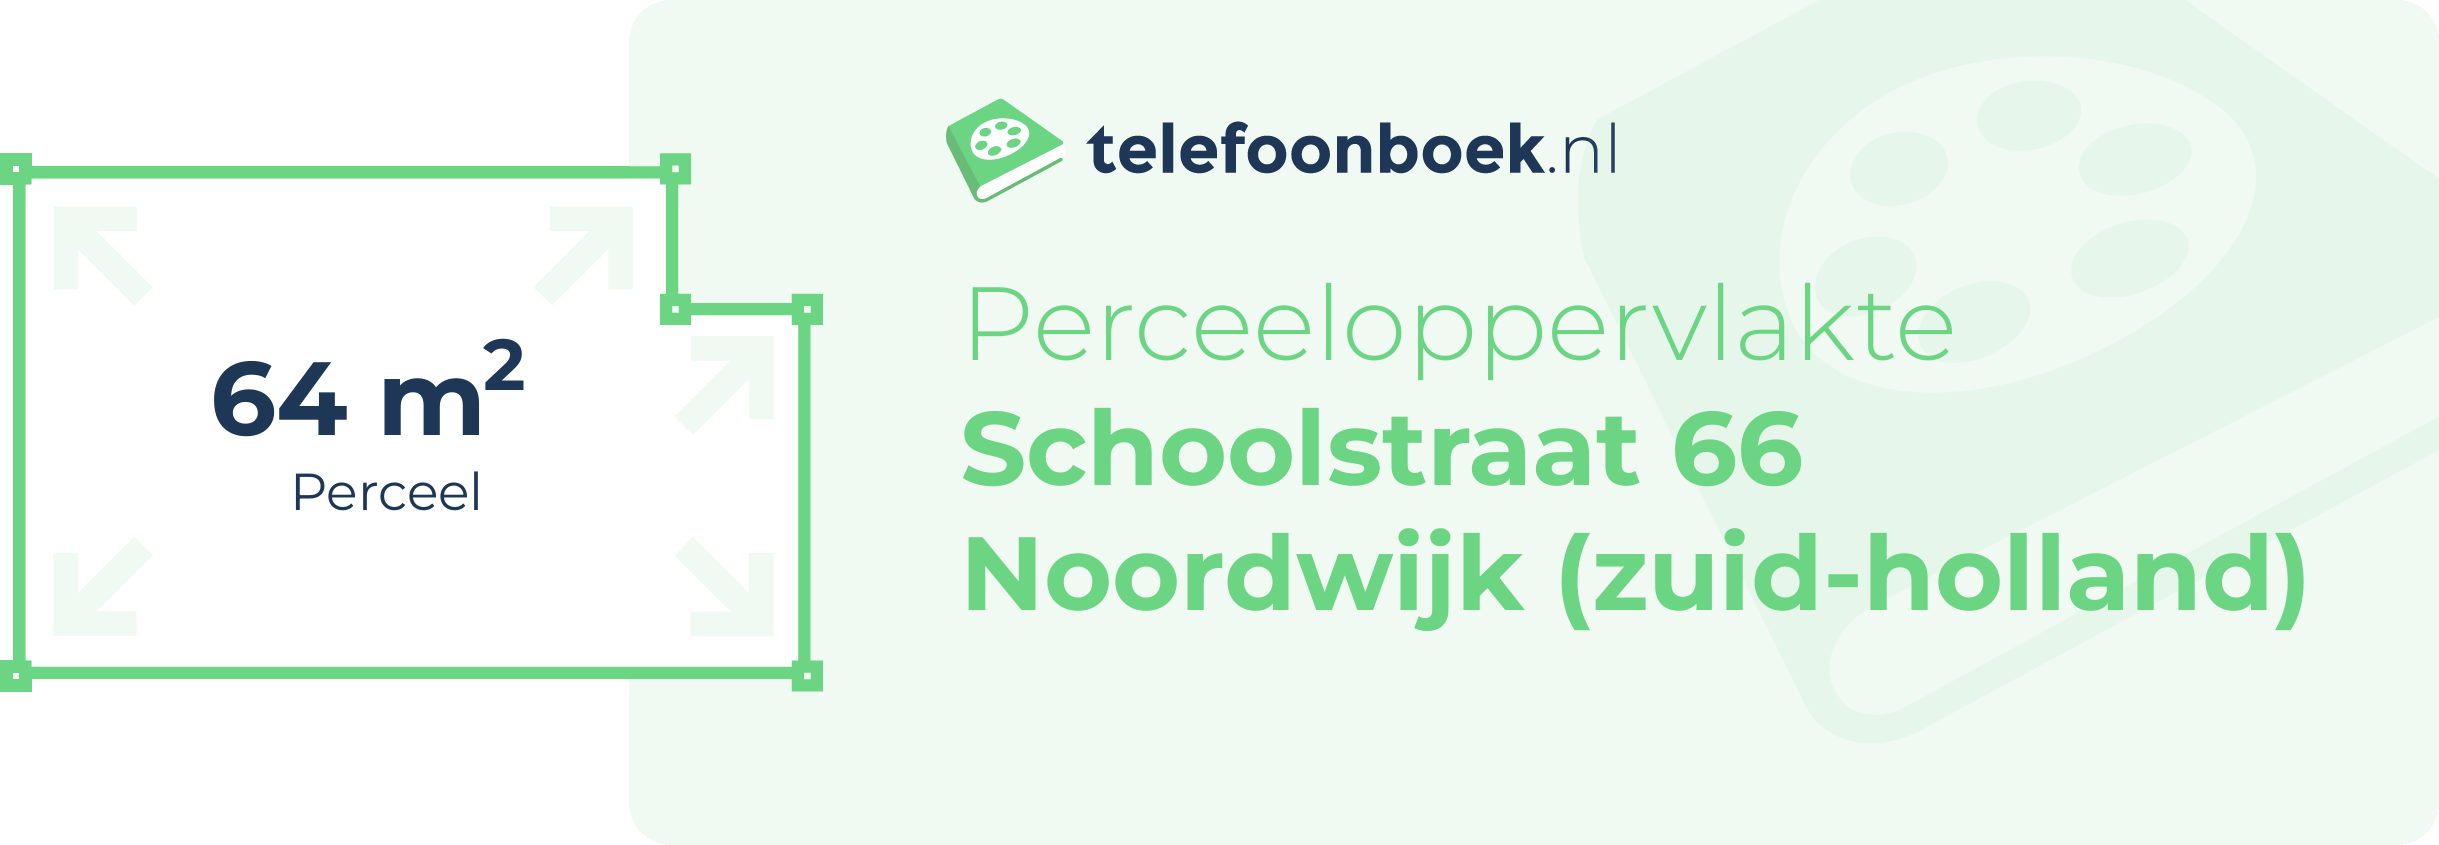 Perceeloppervlakte Schoolstraat 66 Noordwijk (Zuid-Holland)